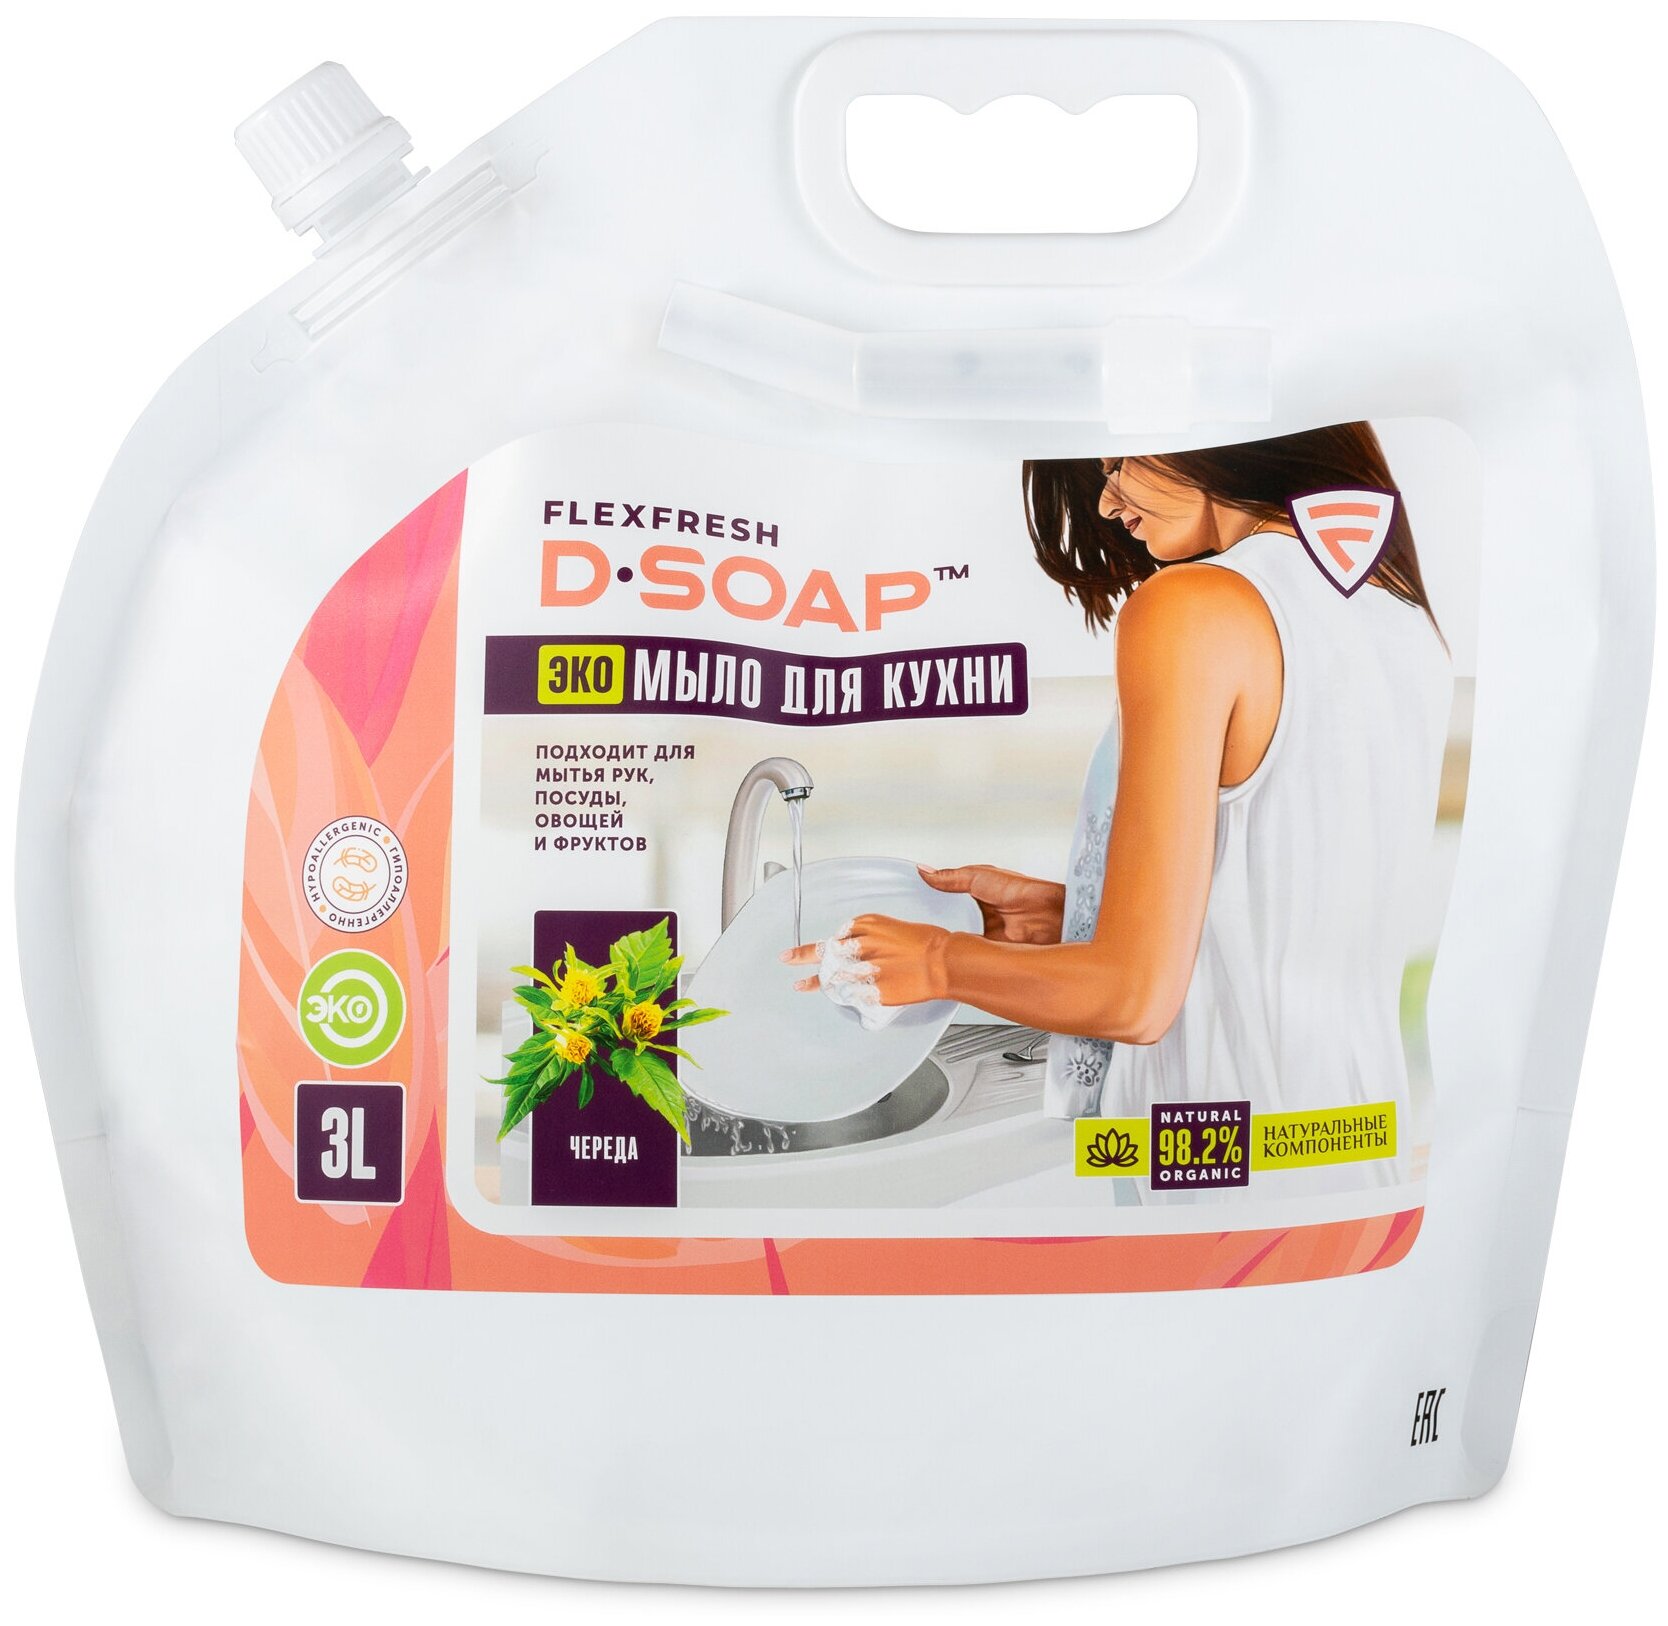 Жидкое ЭКО мыло для кухни Flexfresh D-SOAP 3 литра аромат Череда